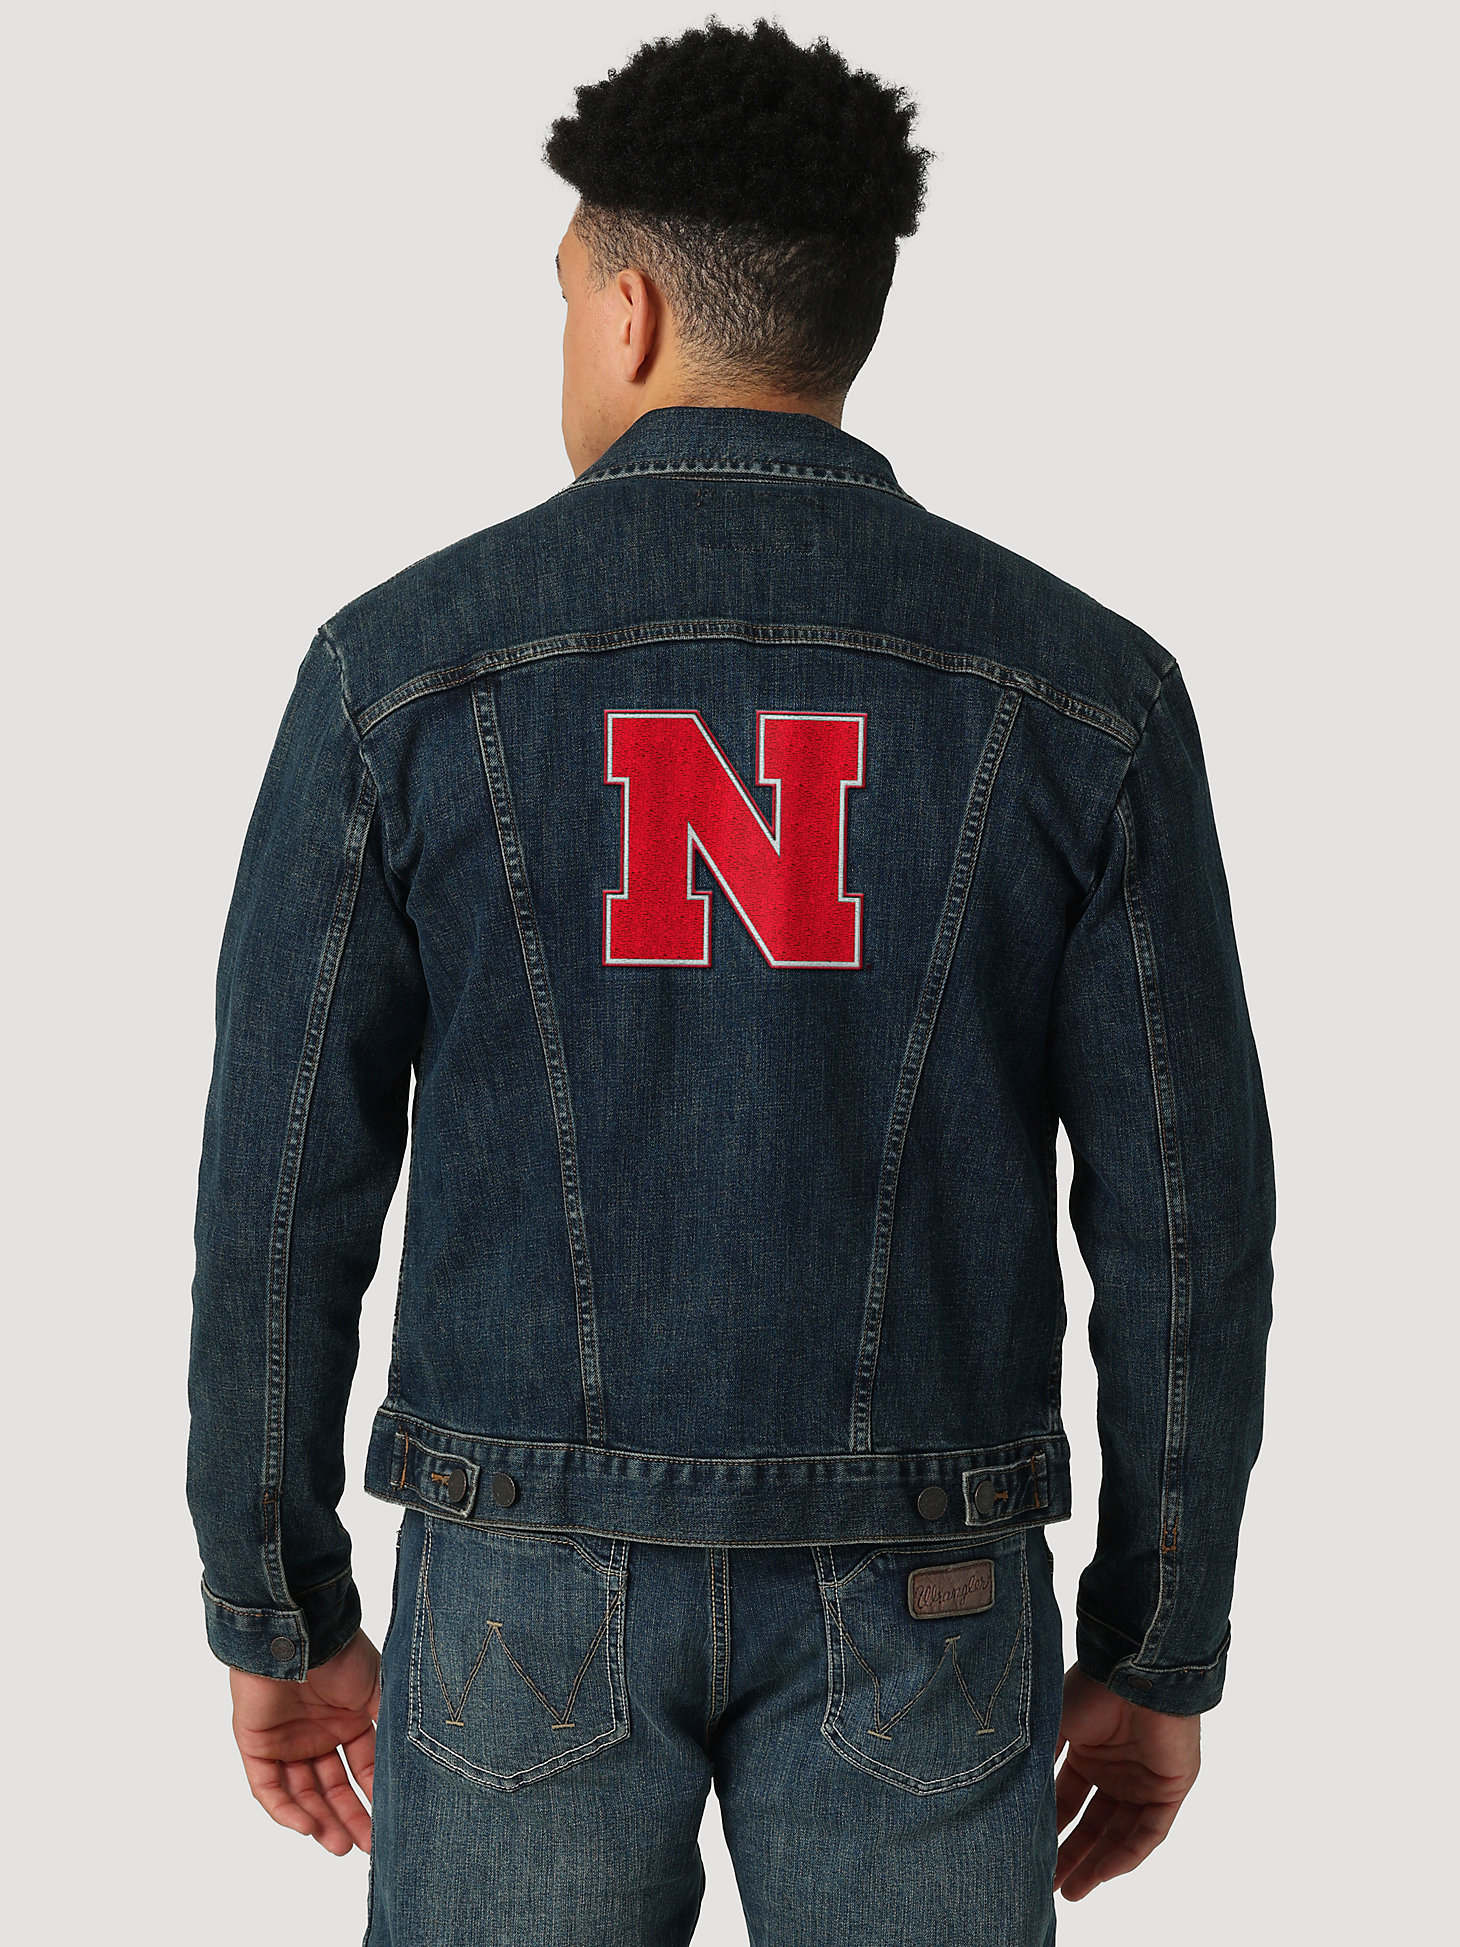 Men's Wrangler Retro Collegiate Embroidered Denim Jacket in University of Nebraska alternative view 1